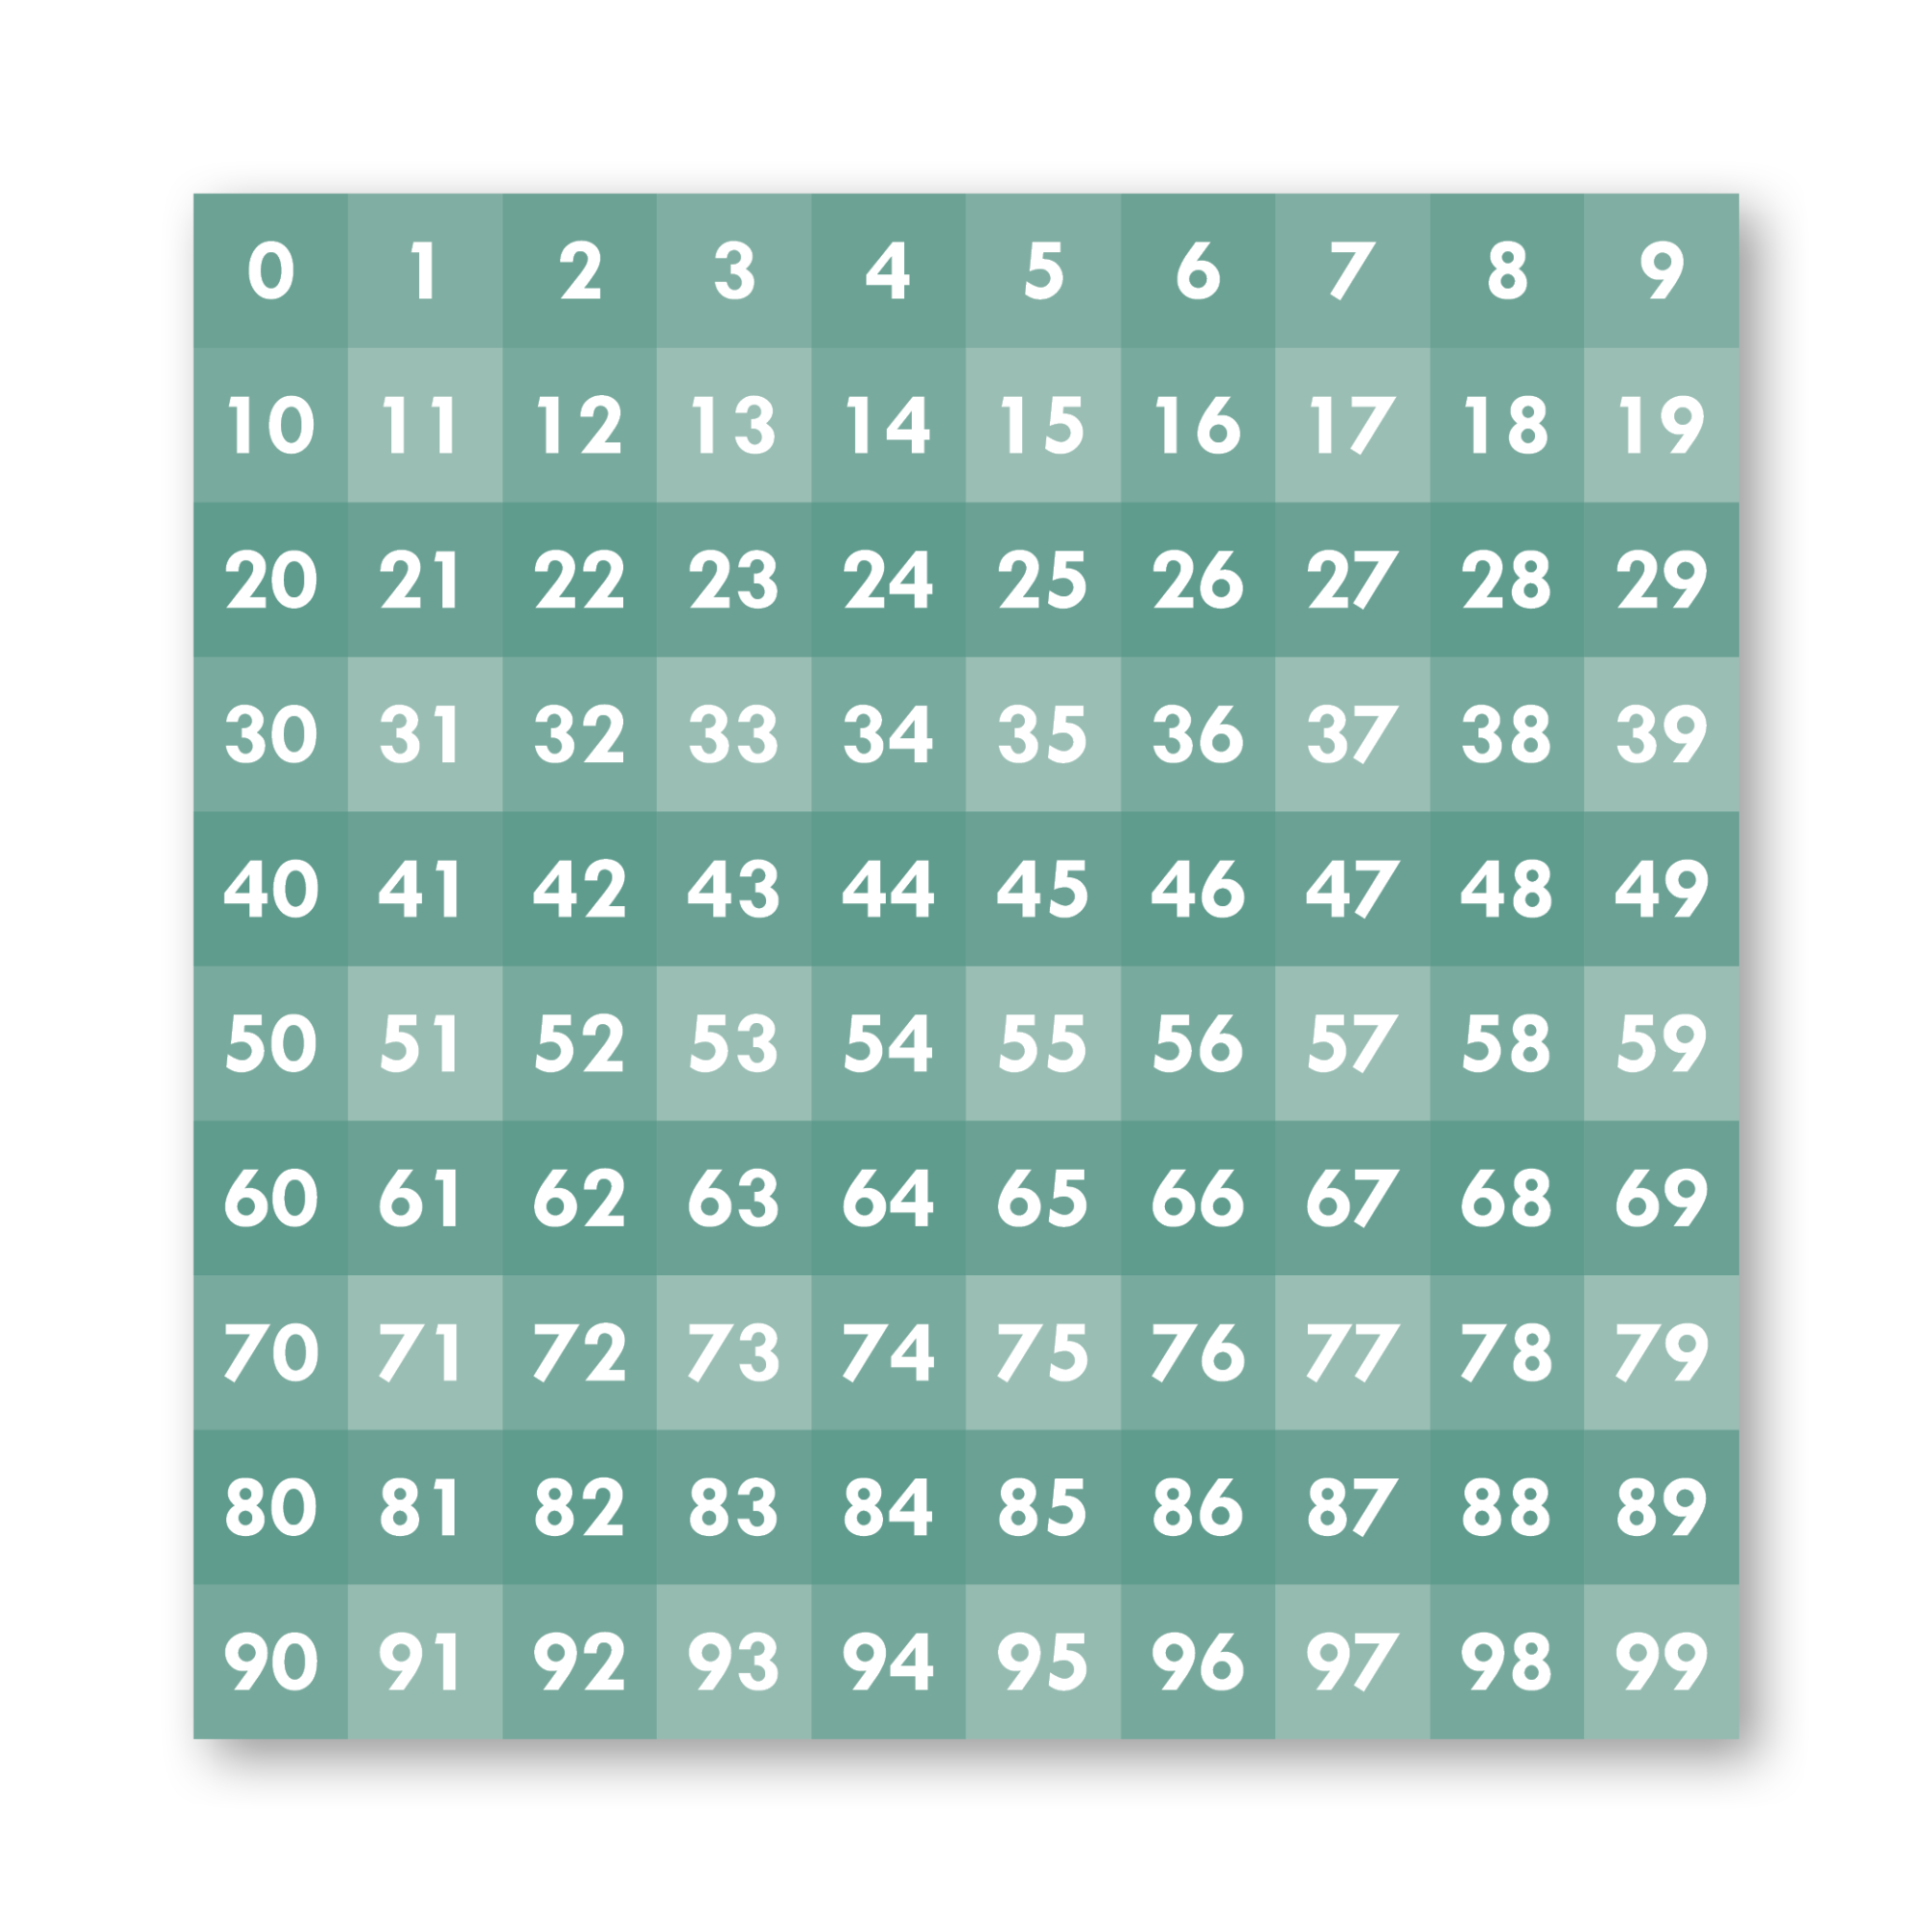 Tallene 0-99 som gulvfolie i forskellige farver, her grøn